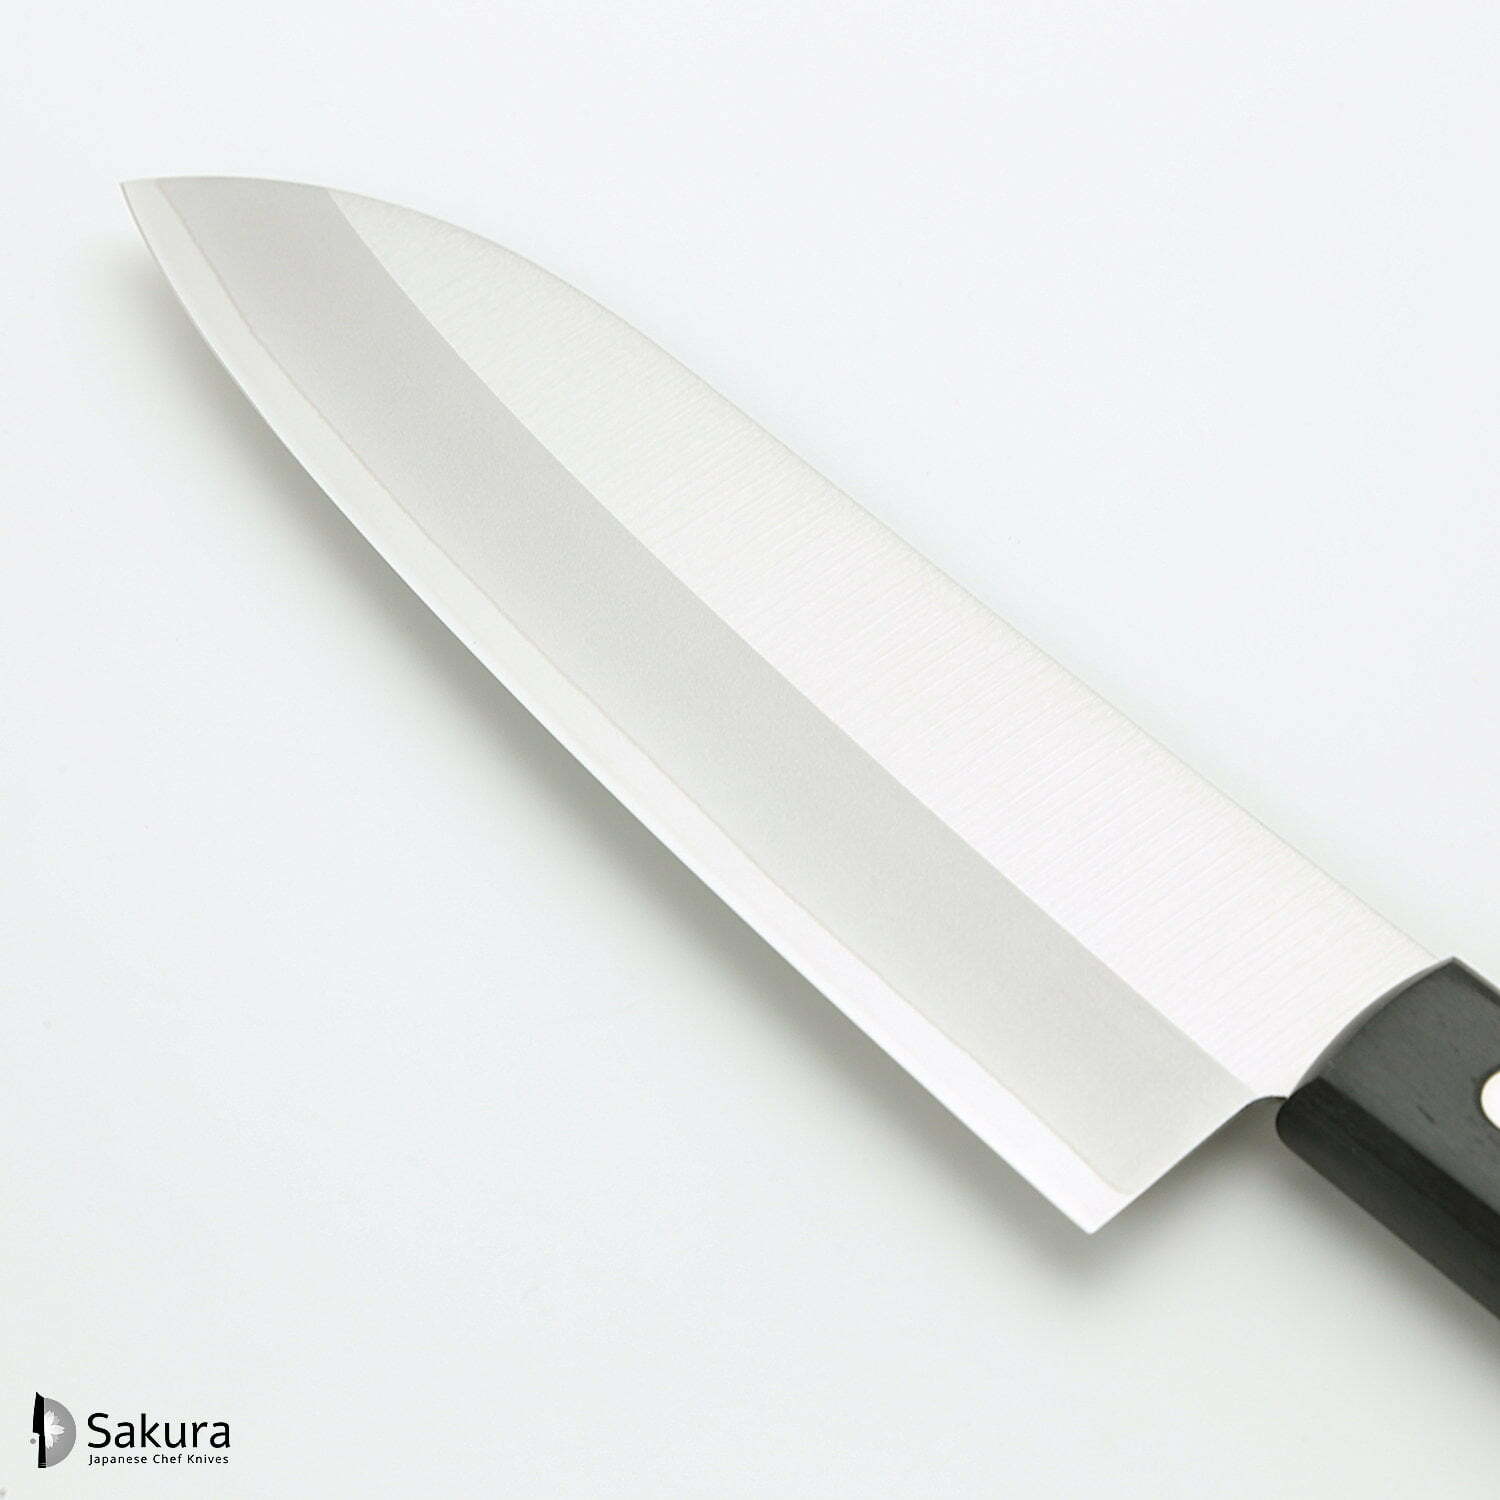 סכין רב-תכליתית סָנטוֹקוּ 170מ״מ מחוזקת 3 שכבות: פלדת פחמן יפנית VG-10 עטופה פלדת אל-חלד גימור מט מלוטש טוג׳ירו יפן